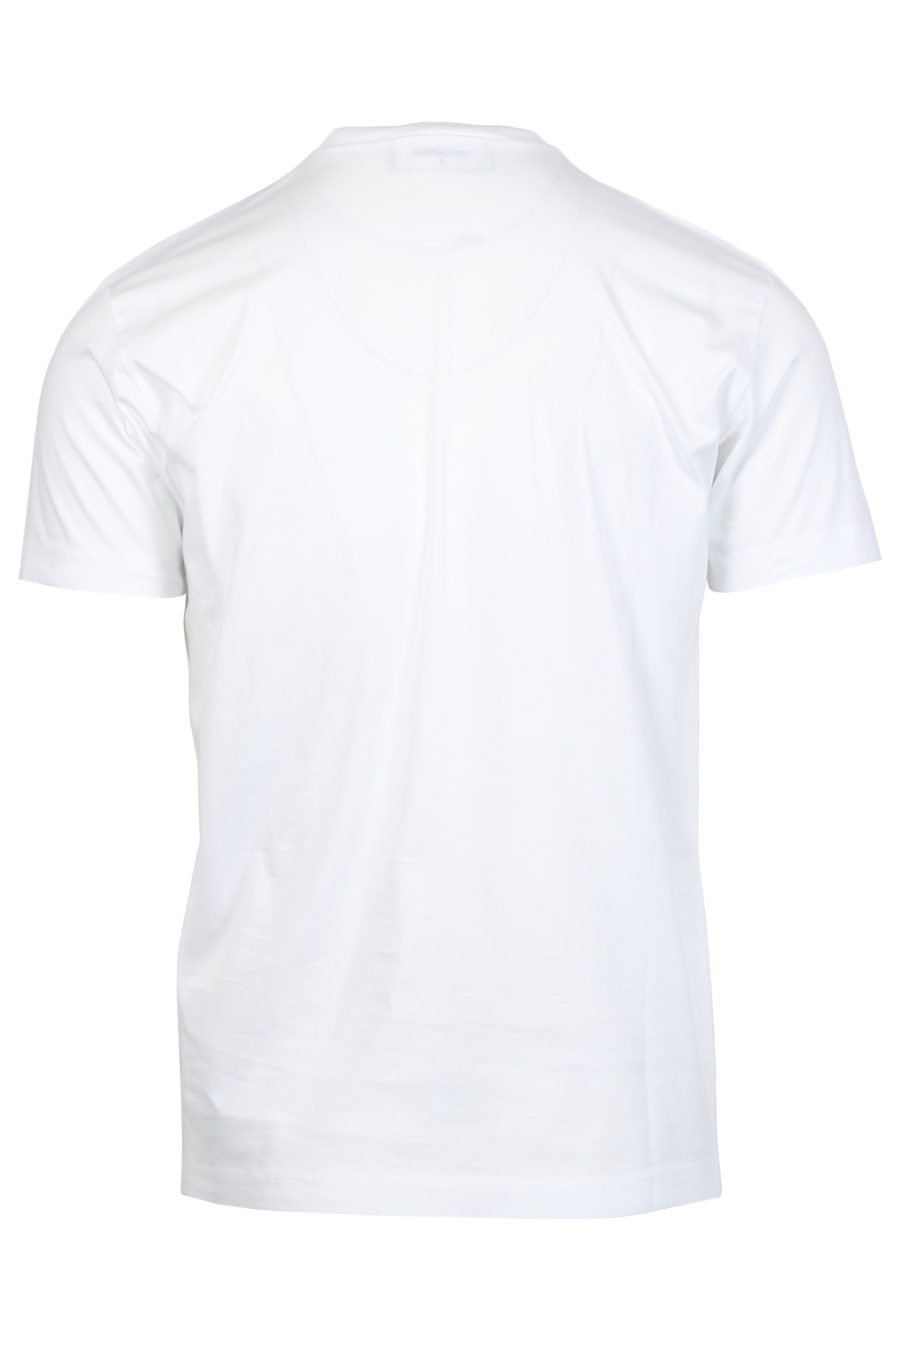 Camiseta blanca con logo de la marca spray - IMG 2413